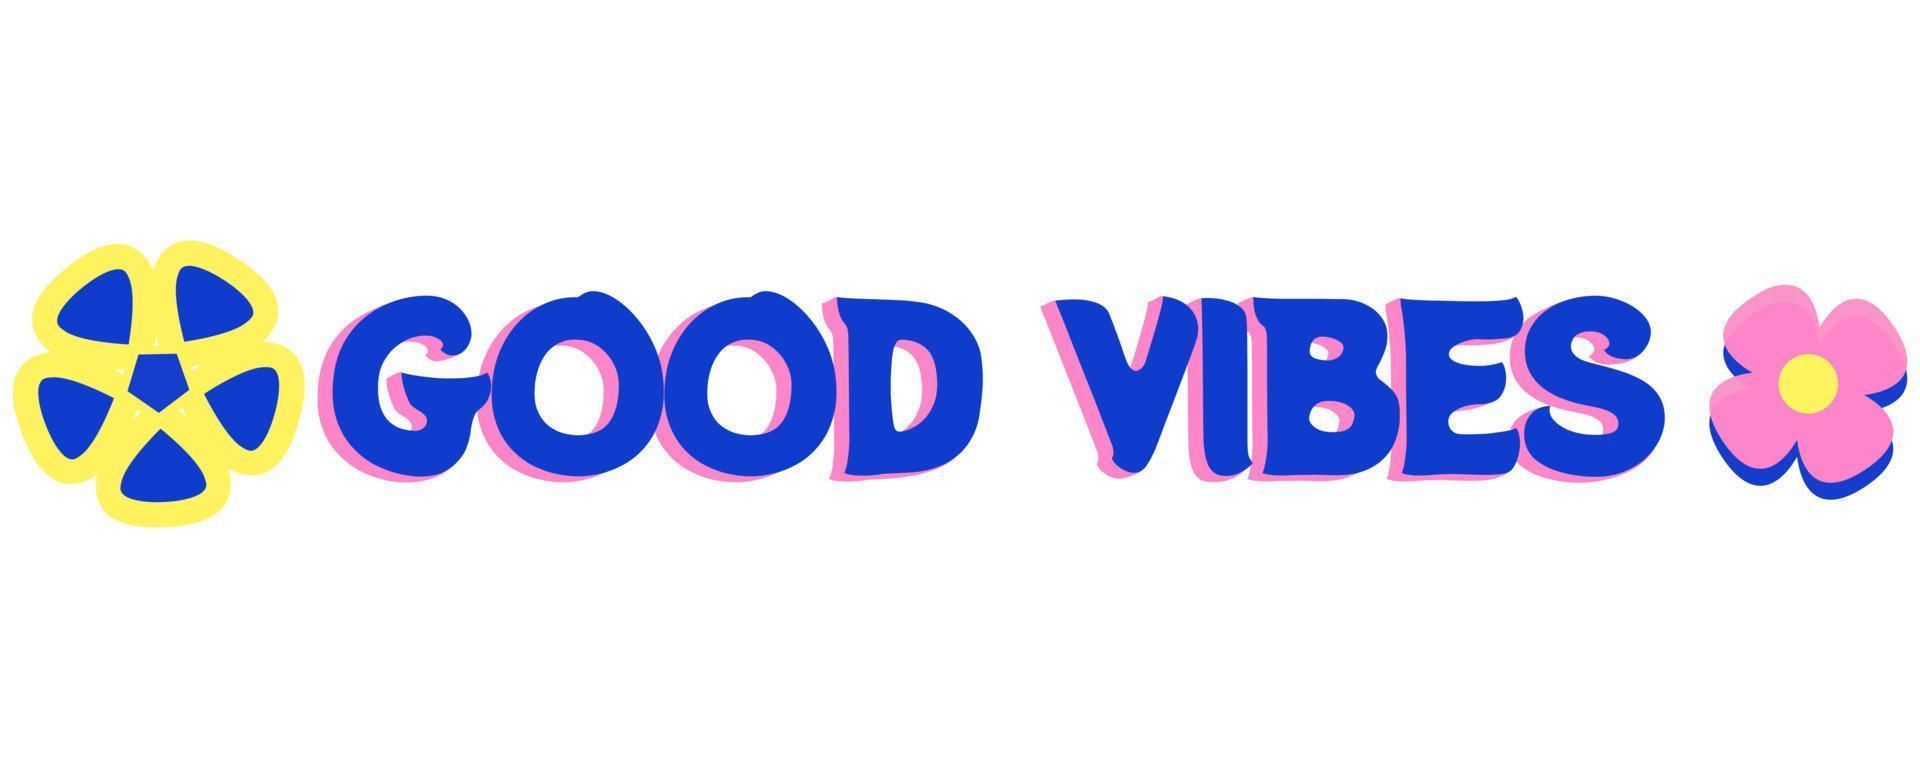 autocollants de motivation sur les bonnes vibrations. citations de lettres avec une couleur bleu profond - autocollants de bonnes vibrations vecteur